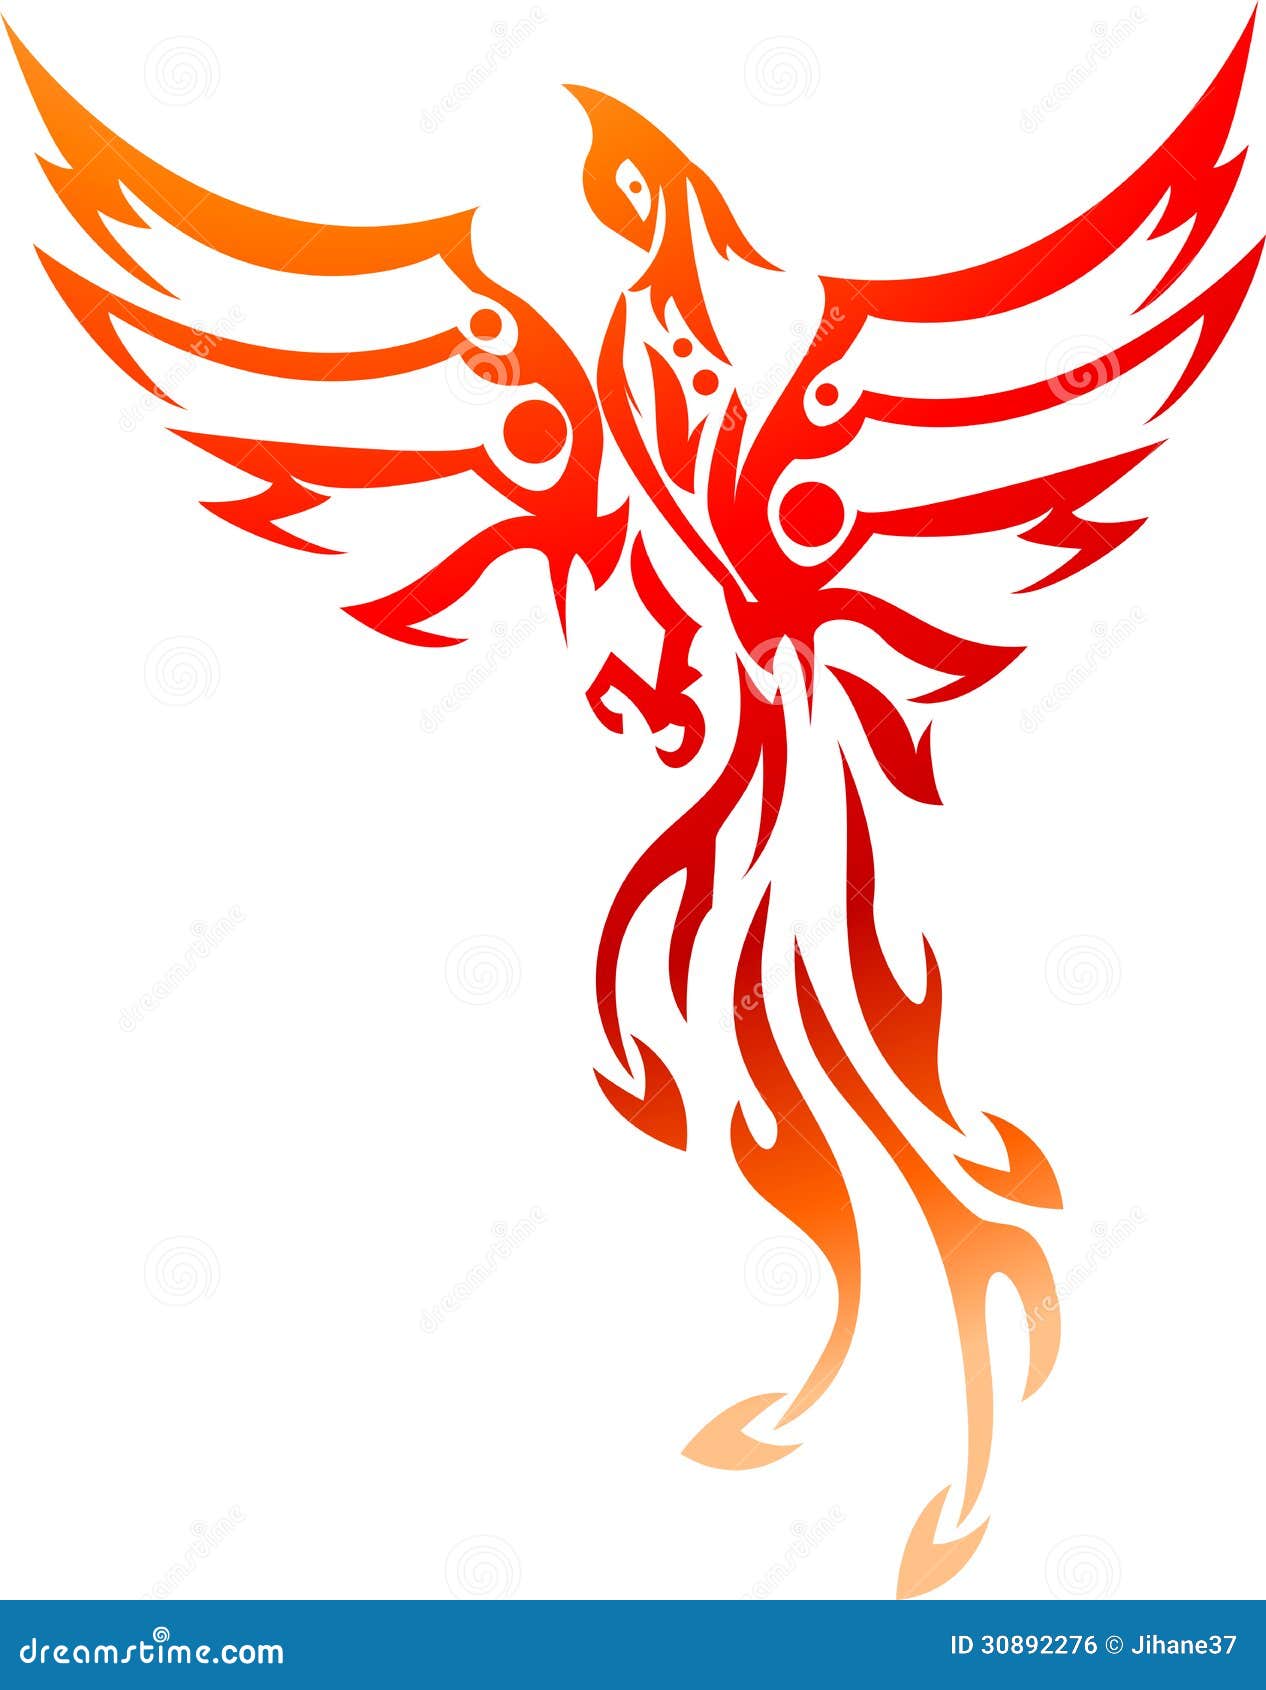 Phoenix tattoo tribal stock illustration. Illustration of mythological ...